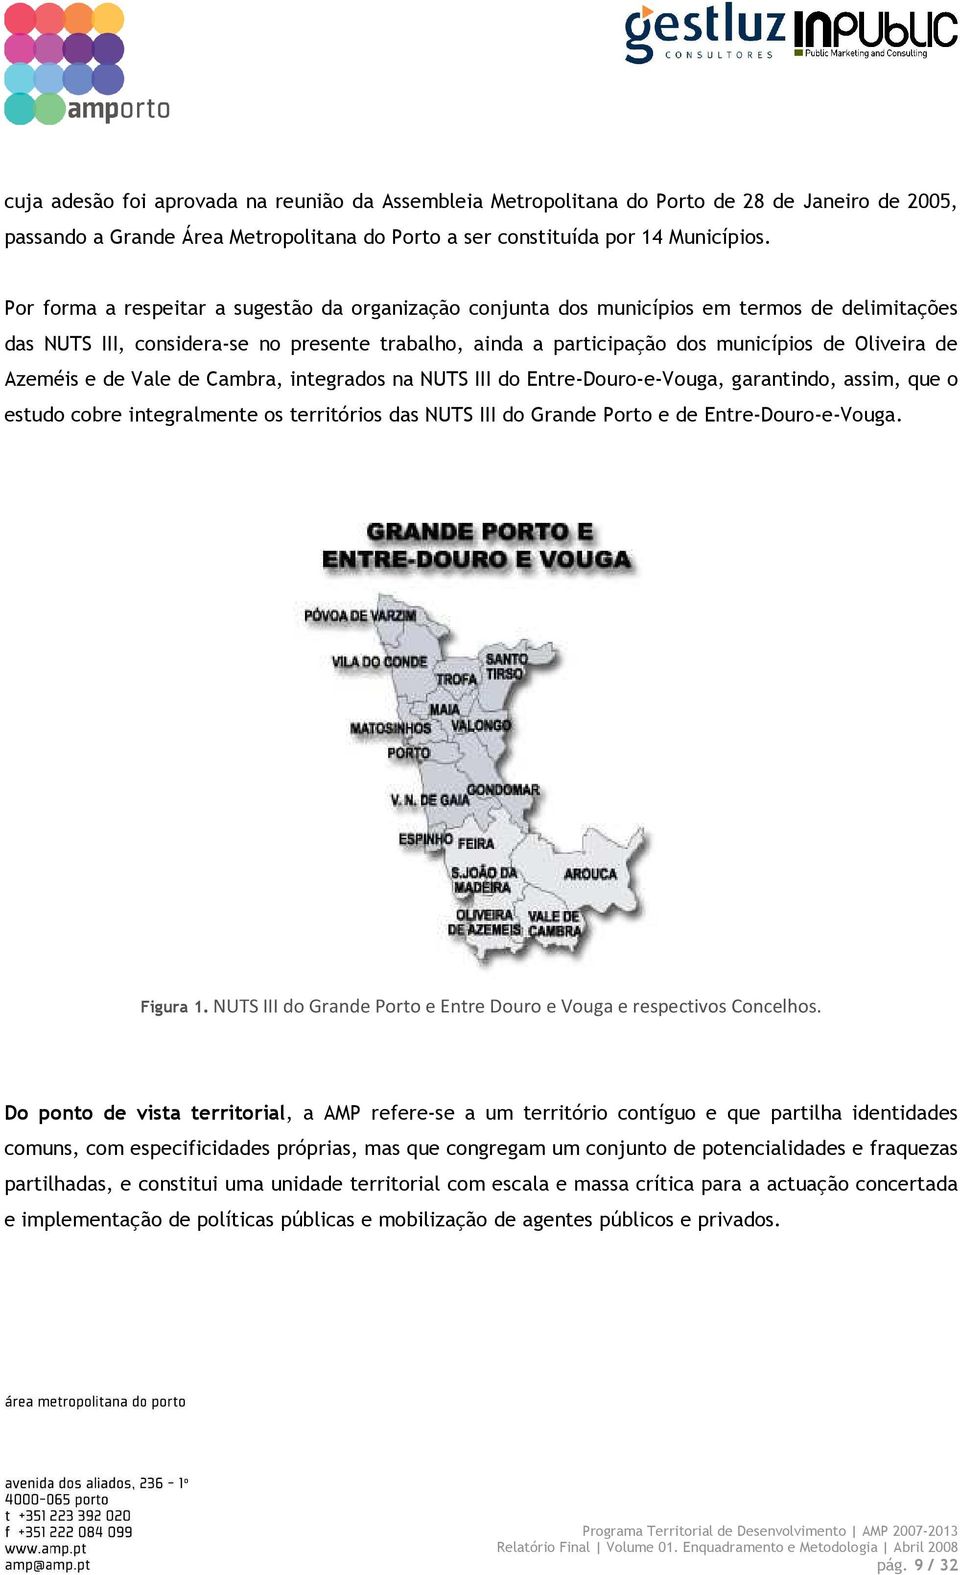 Azeméis e de Vale de Cambra, integrados na NUTS III do Entre-Douro-e-Vouga, garantindo, assim, que o estudo cobre integralmente os territórios das NUTS III do Grande Porto e de Entre-Douro-e-Vouga.